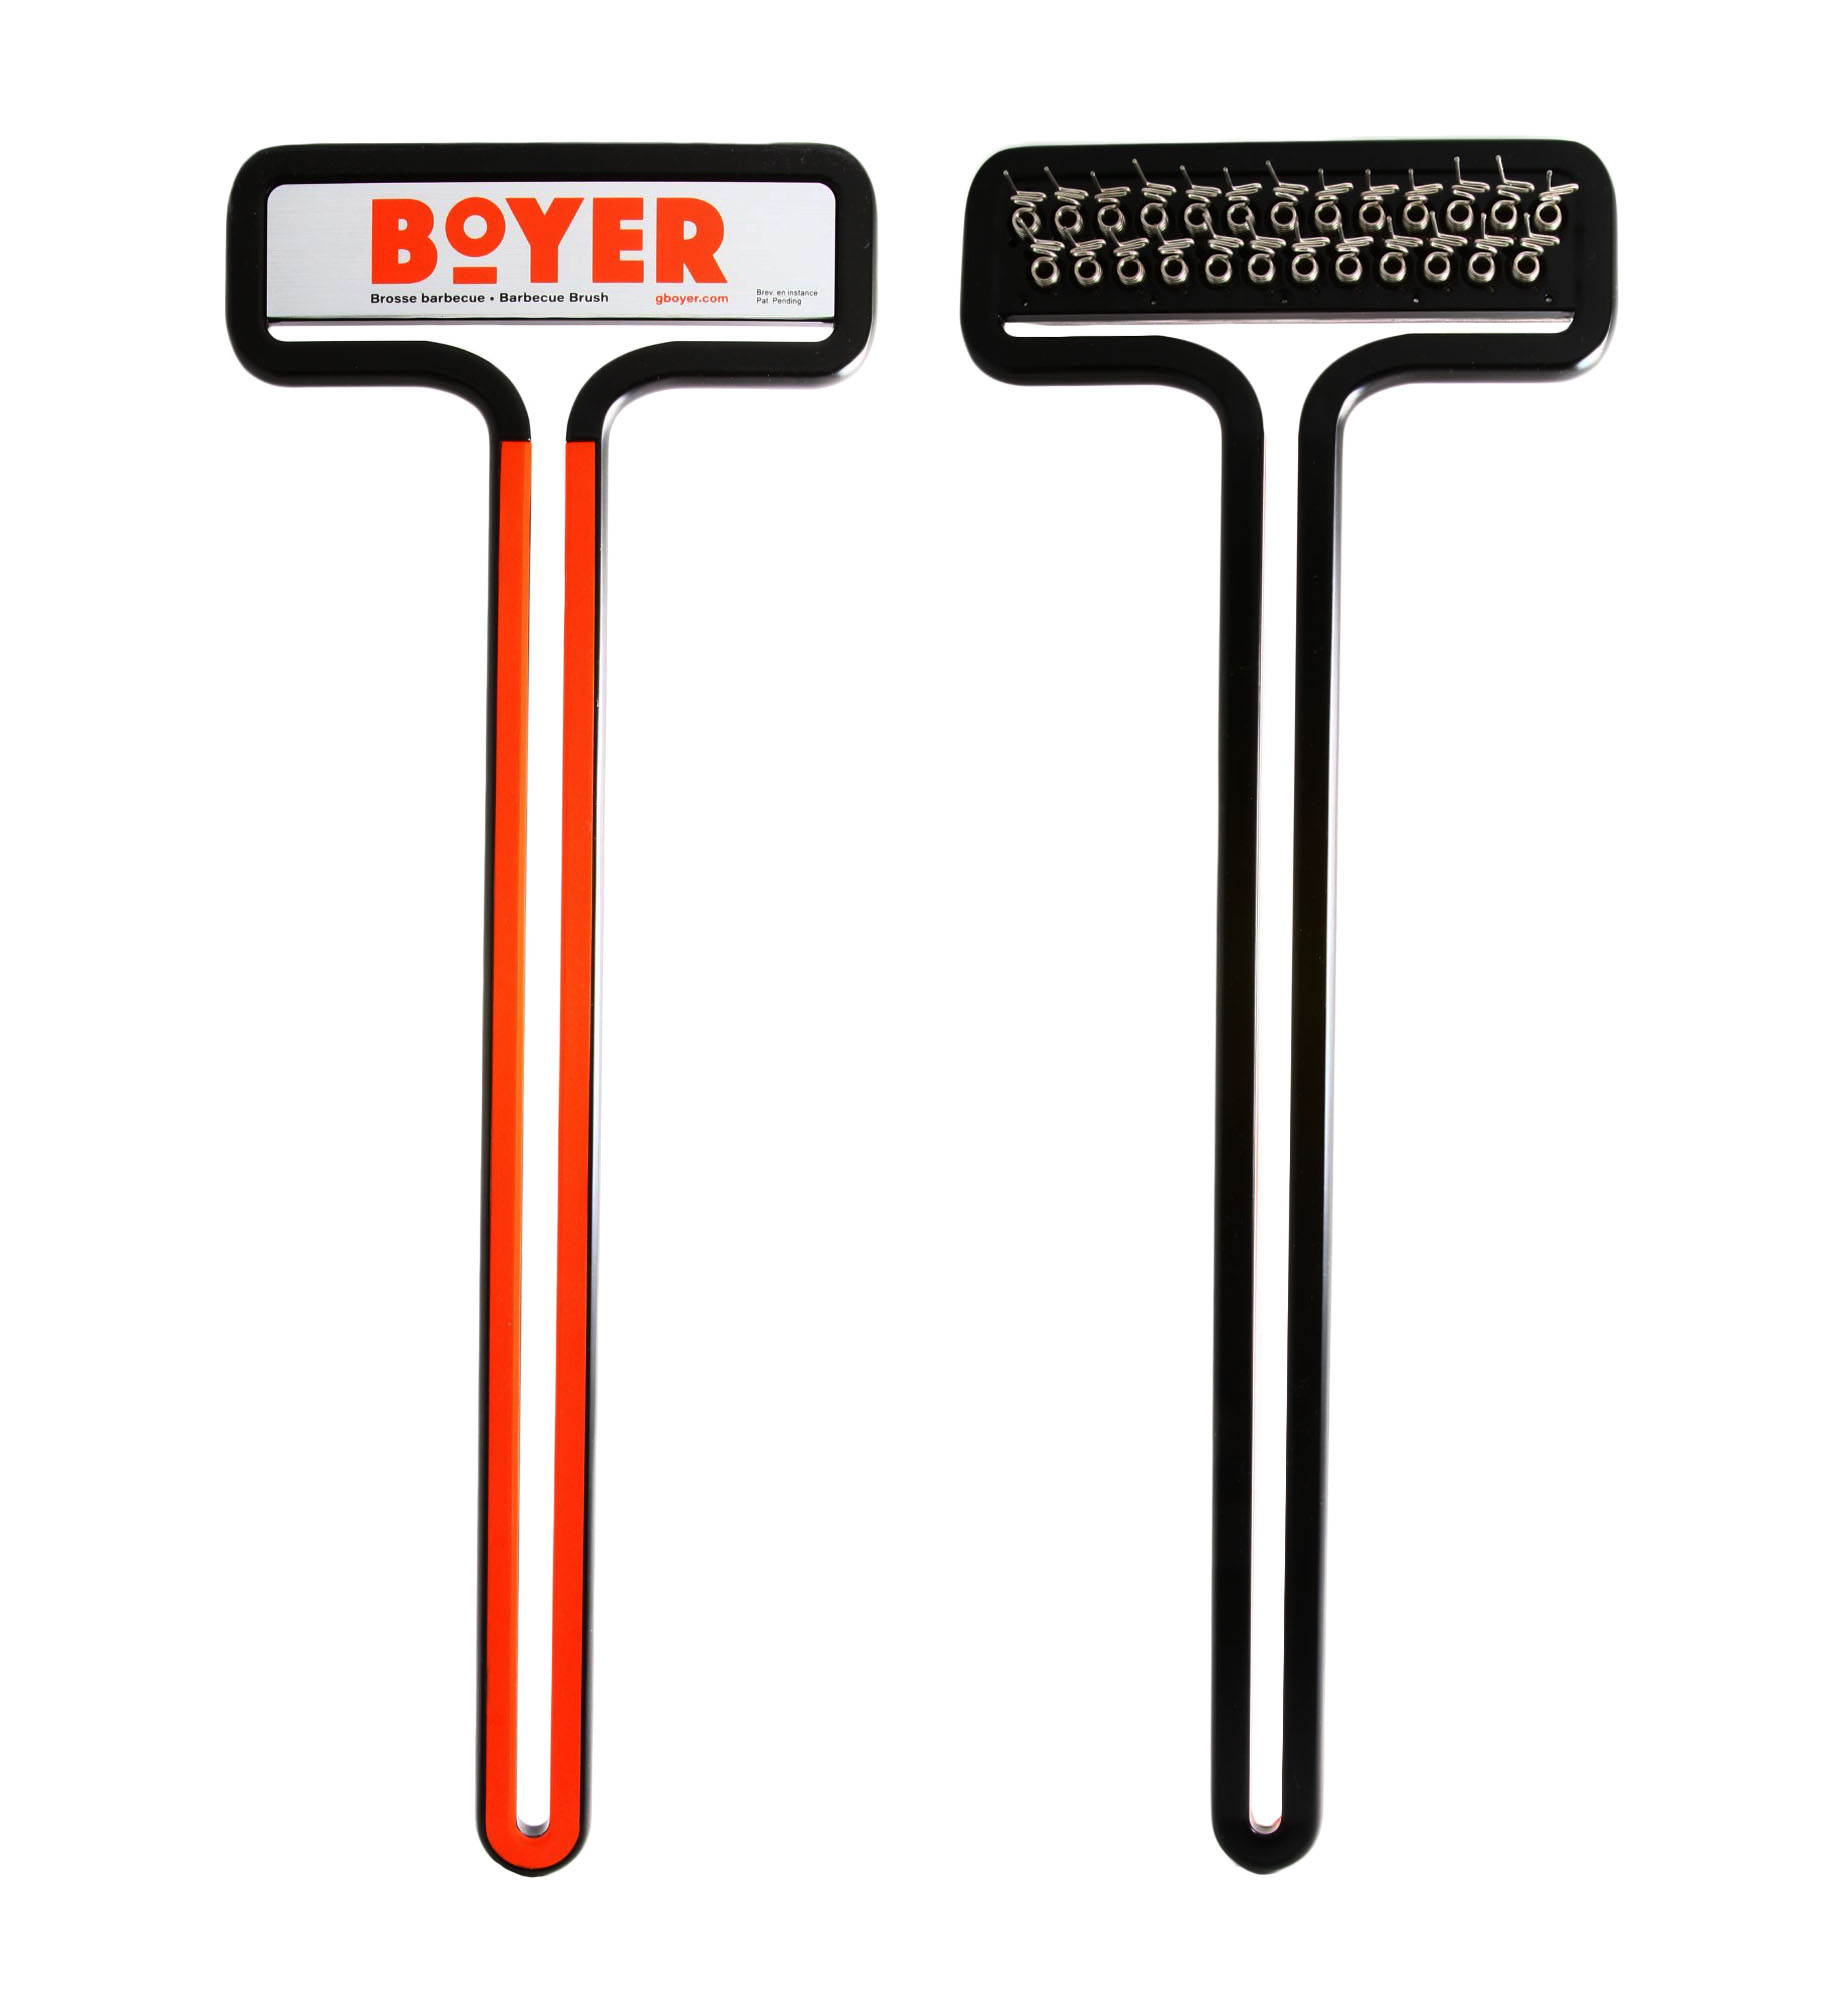 Boyer Brush™ - The Safest Grill Brush